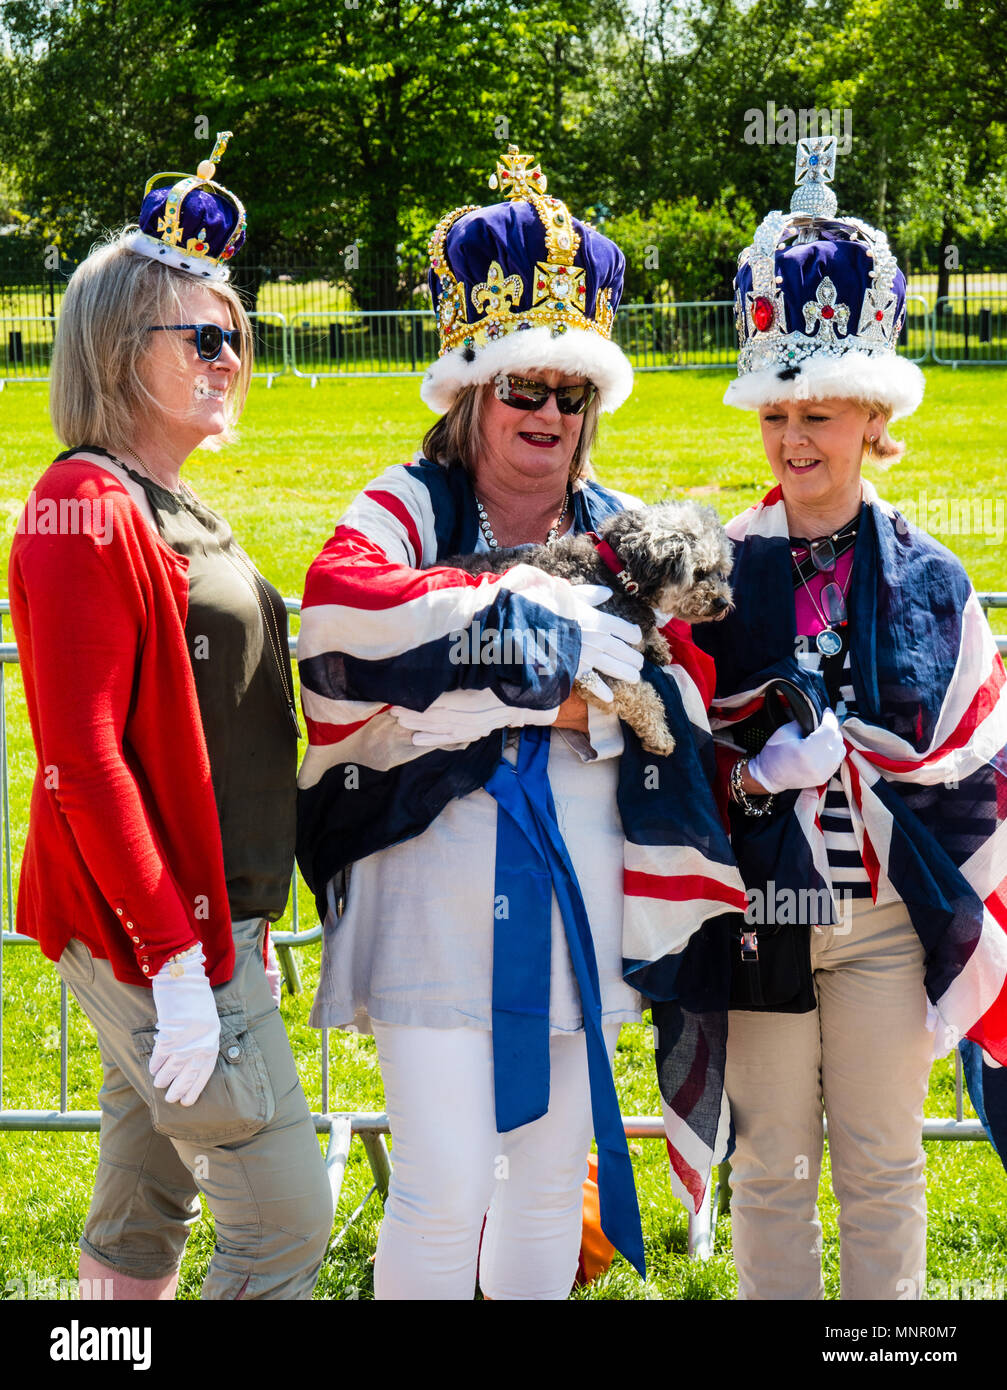 Tre i realisti, Royal Wedding 2018, la lunga passeggiata, il Castello di Windsor, Windsor, Berkshire, Inghilterra, Regno Unito, GB. Foto Stock